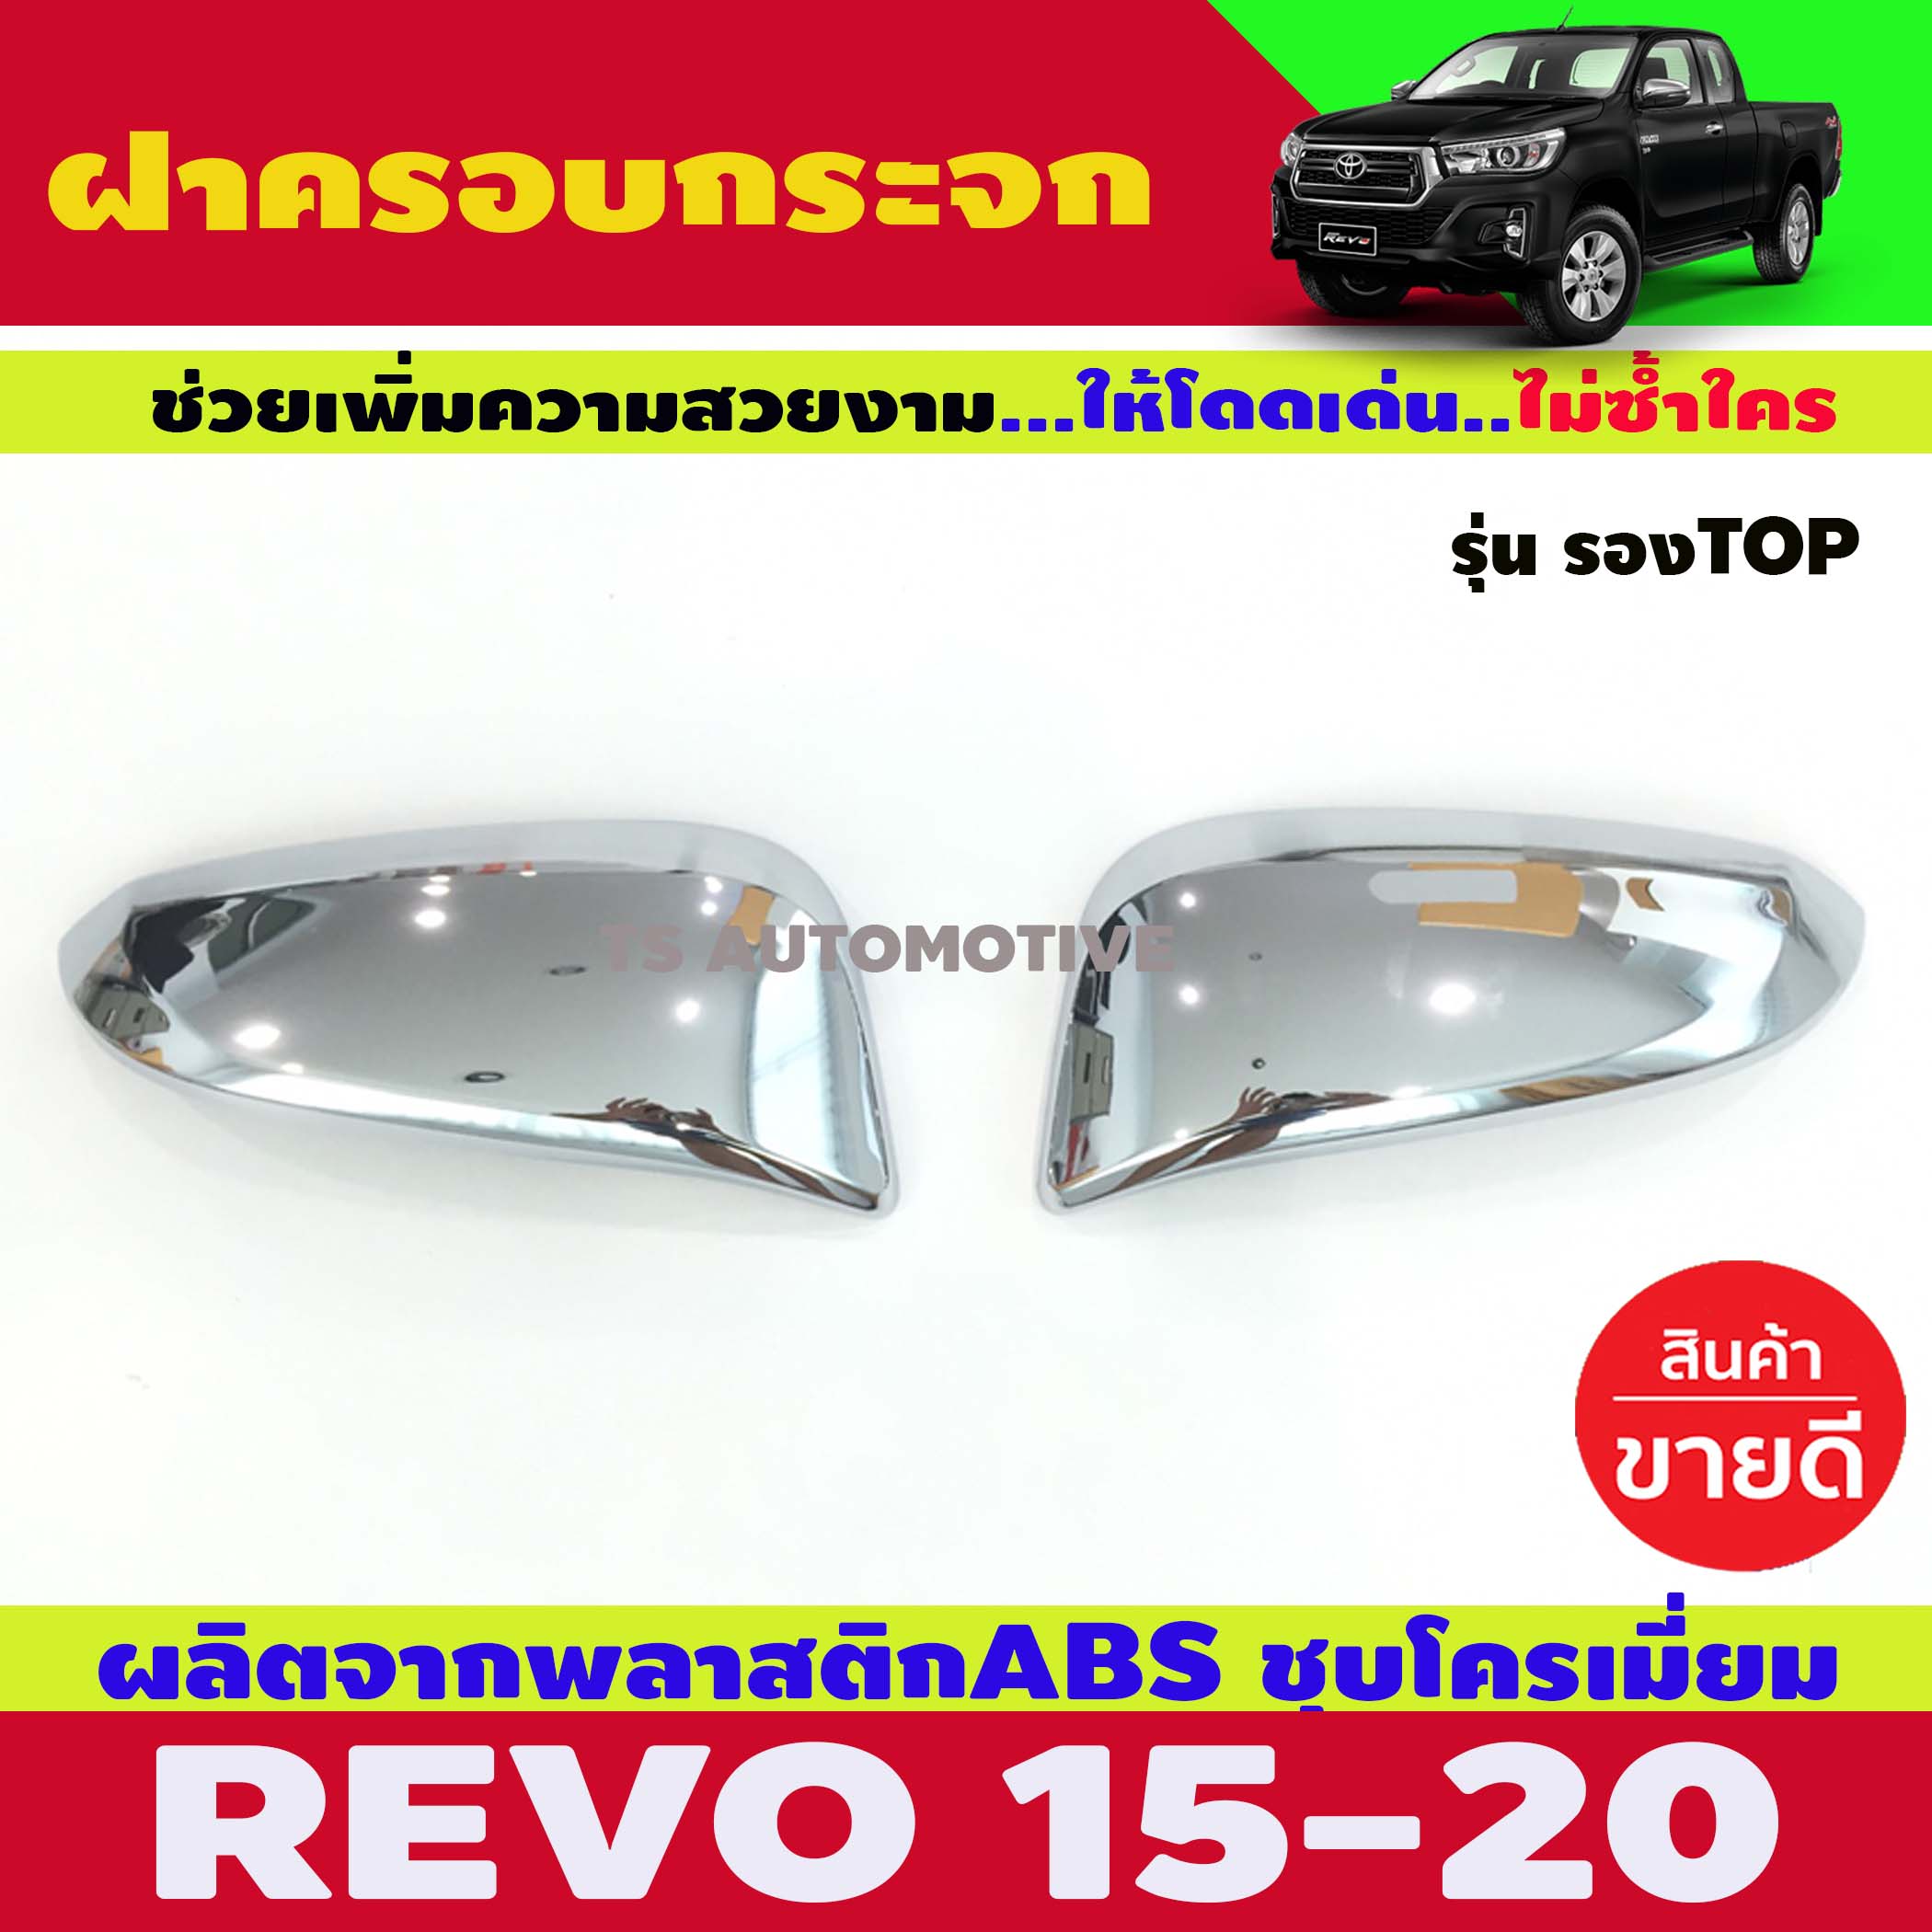 ครอบกระจกมองข้าง ชุบโครเมี่ยม Toyota Revo Rocco 2015-2019 ครอบกระจก ชุบ โครเมี่ยม โตโยต้า รีโว้ ร็อคโค กระบะ 15-19 15 16 17 18 19 (2 ชิ้น)